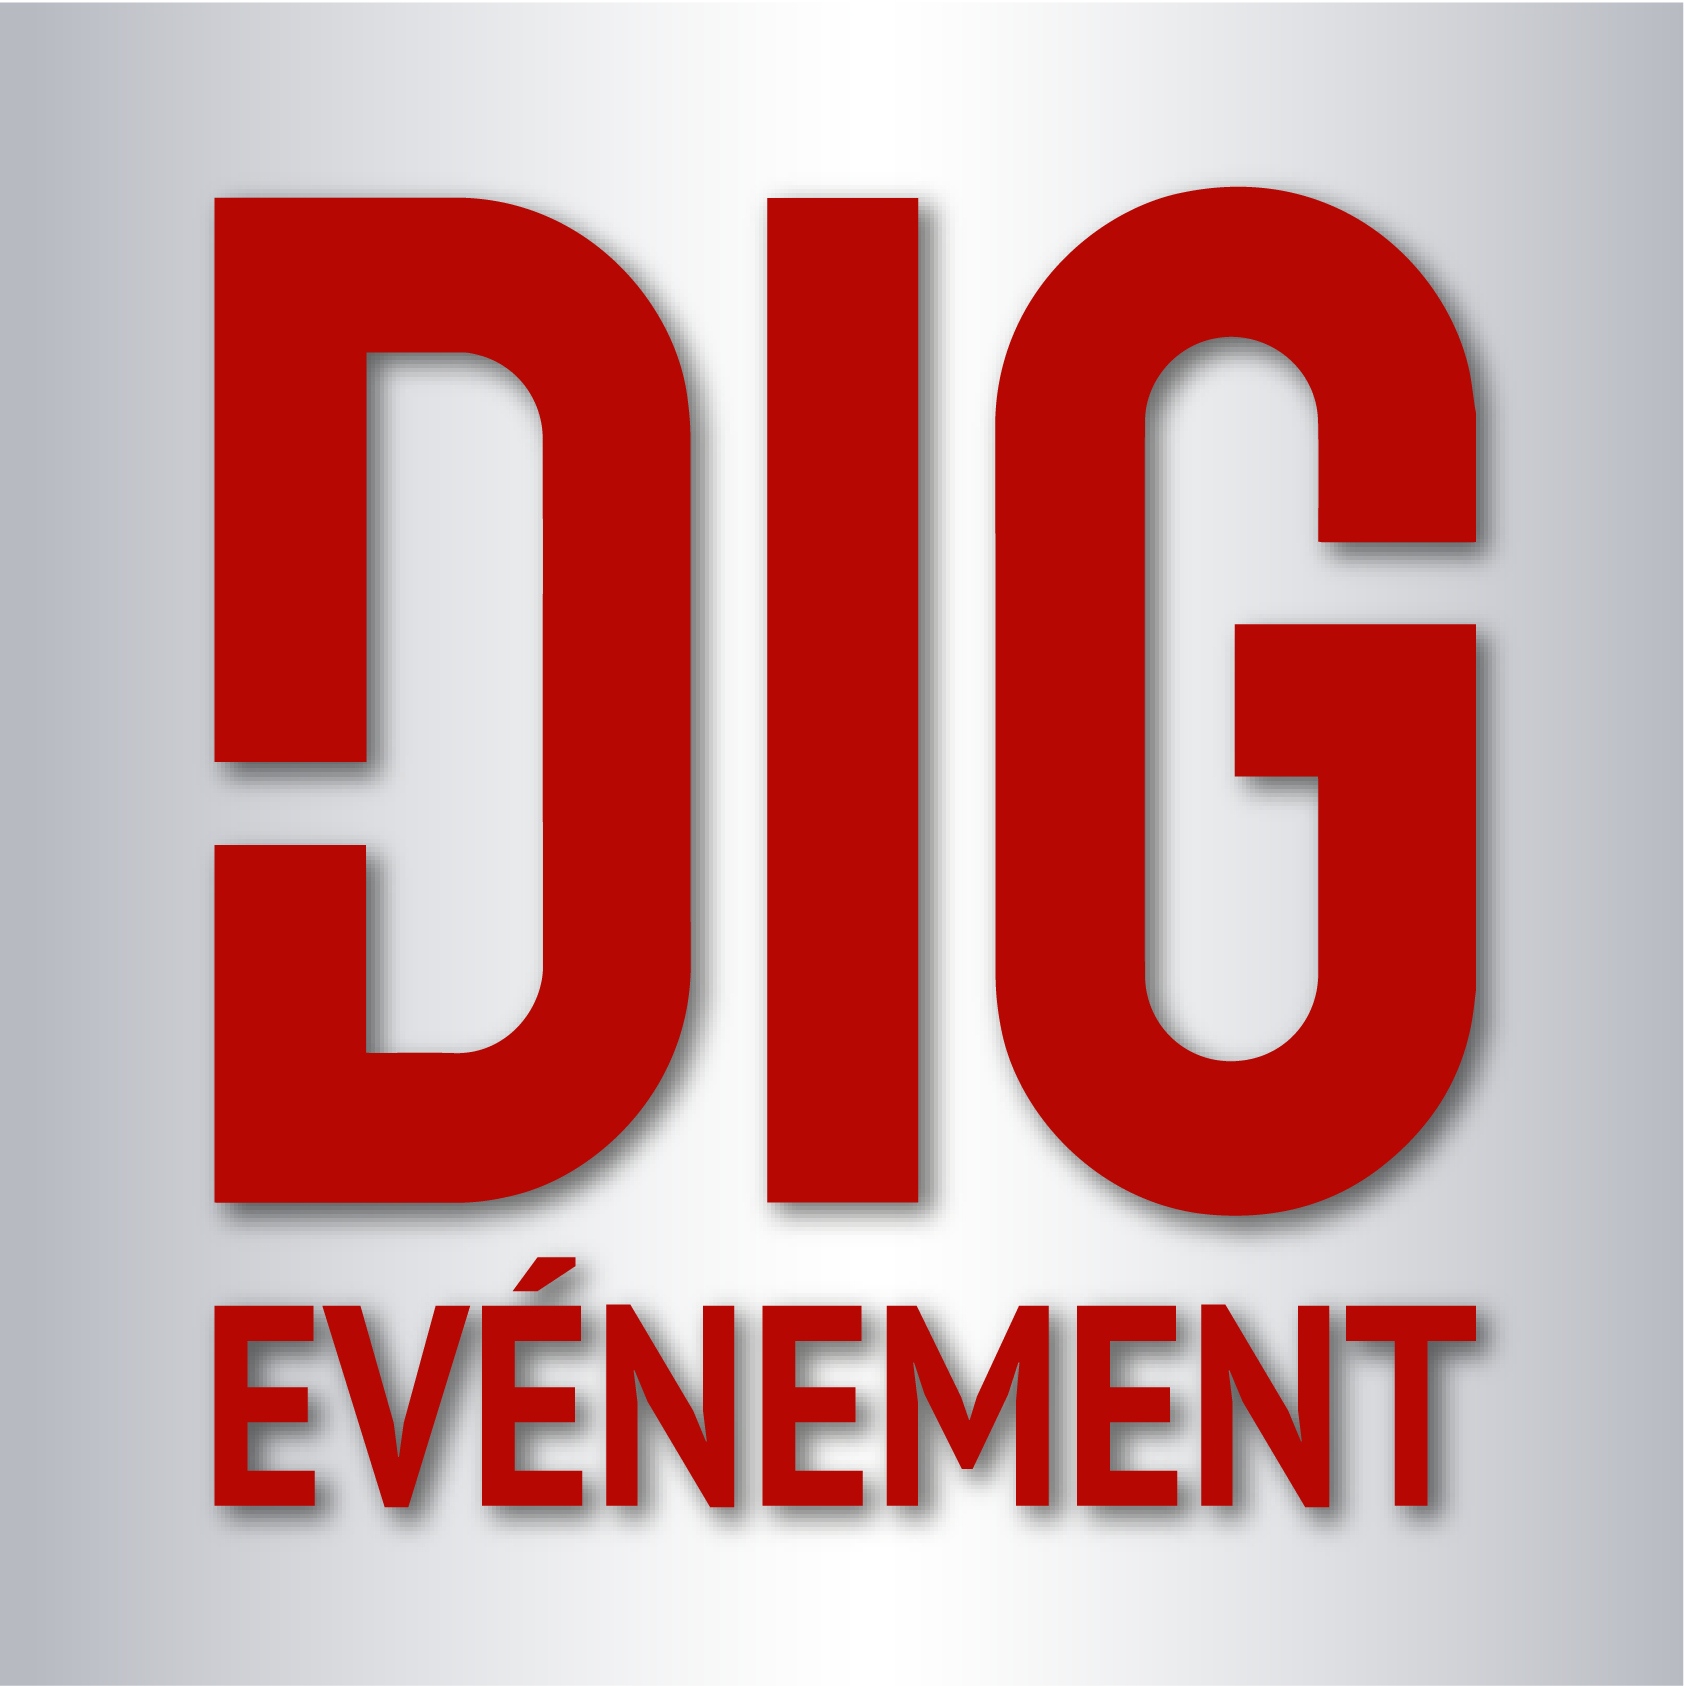 DIG EVENT_ROUGE FOND GRIS.png (121 KB)